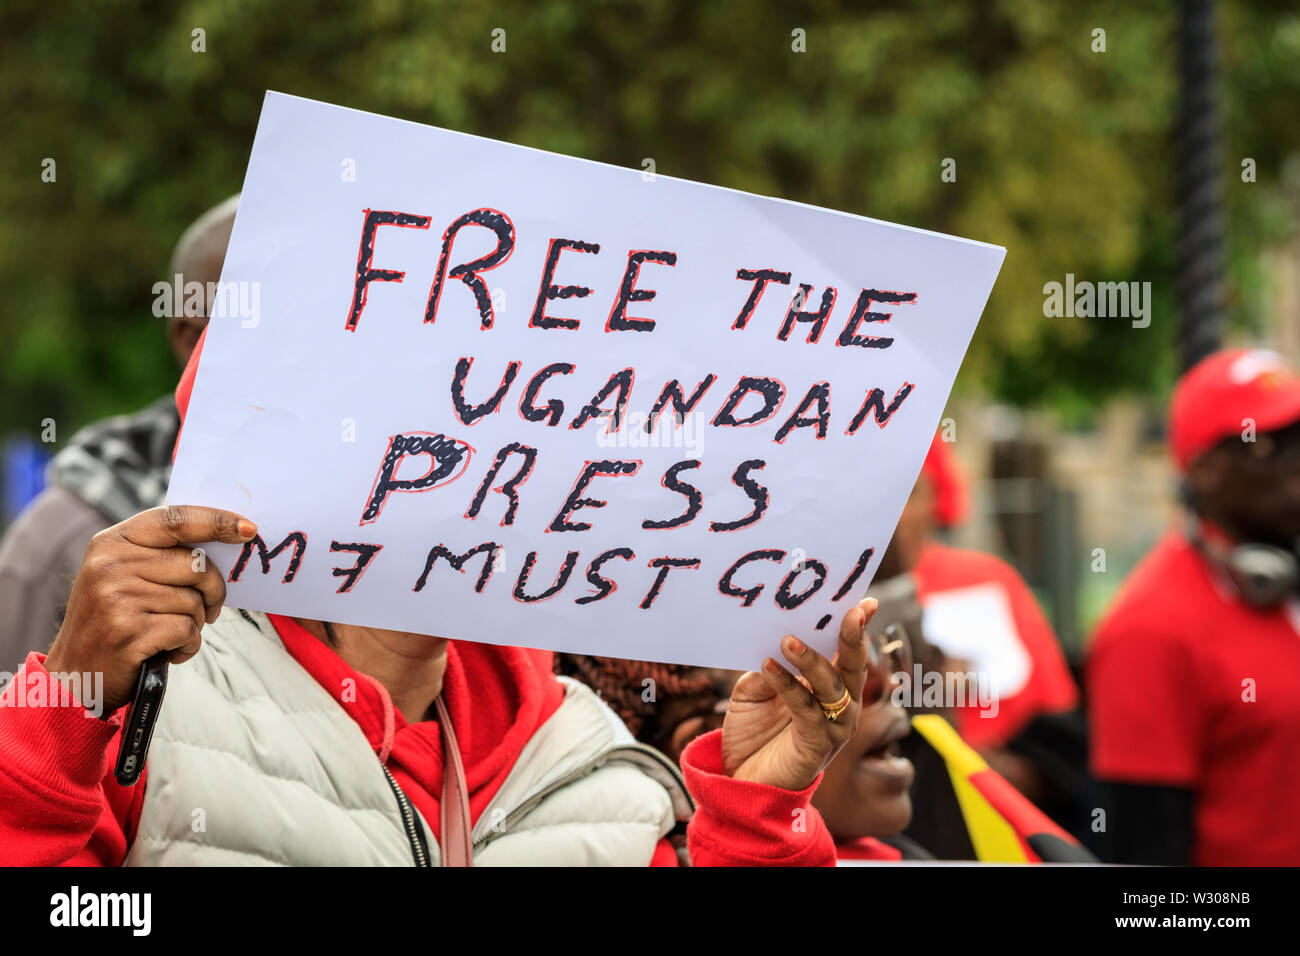 Un manifestant de l'Ouganda avec la presse "libre" qui manifestent contre le président Museveni de l'Ouganda à Londres, Royaume-Uni Banque D'Images